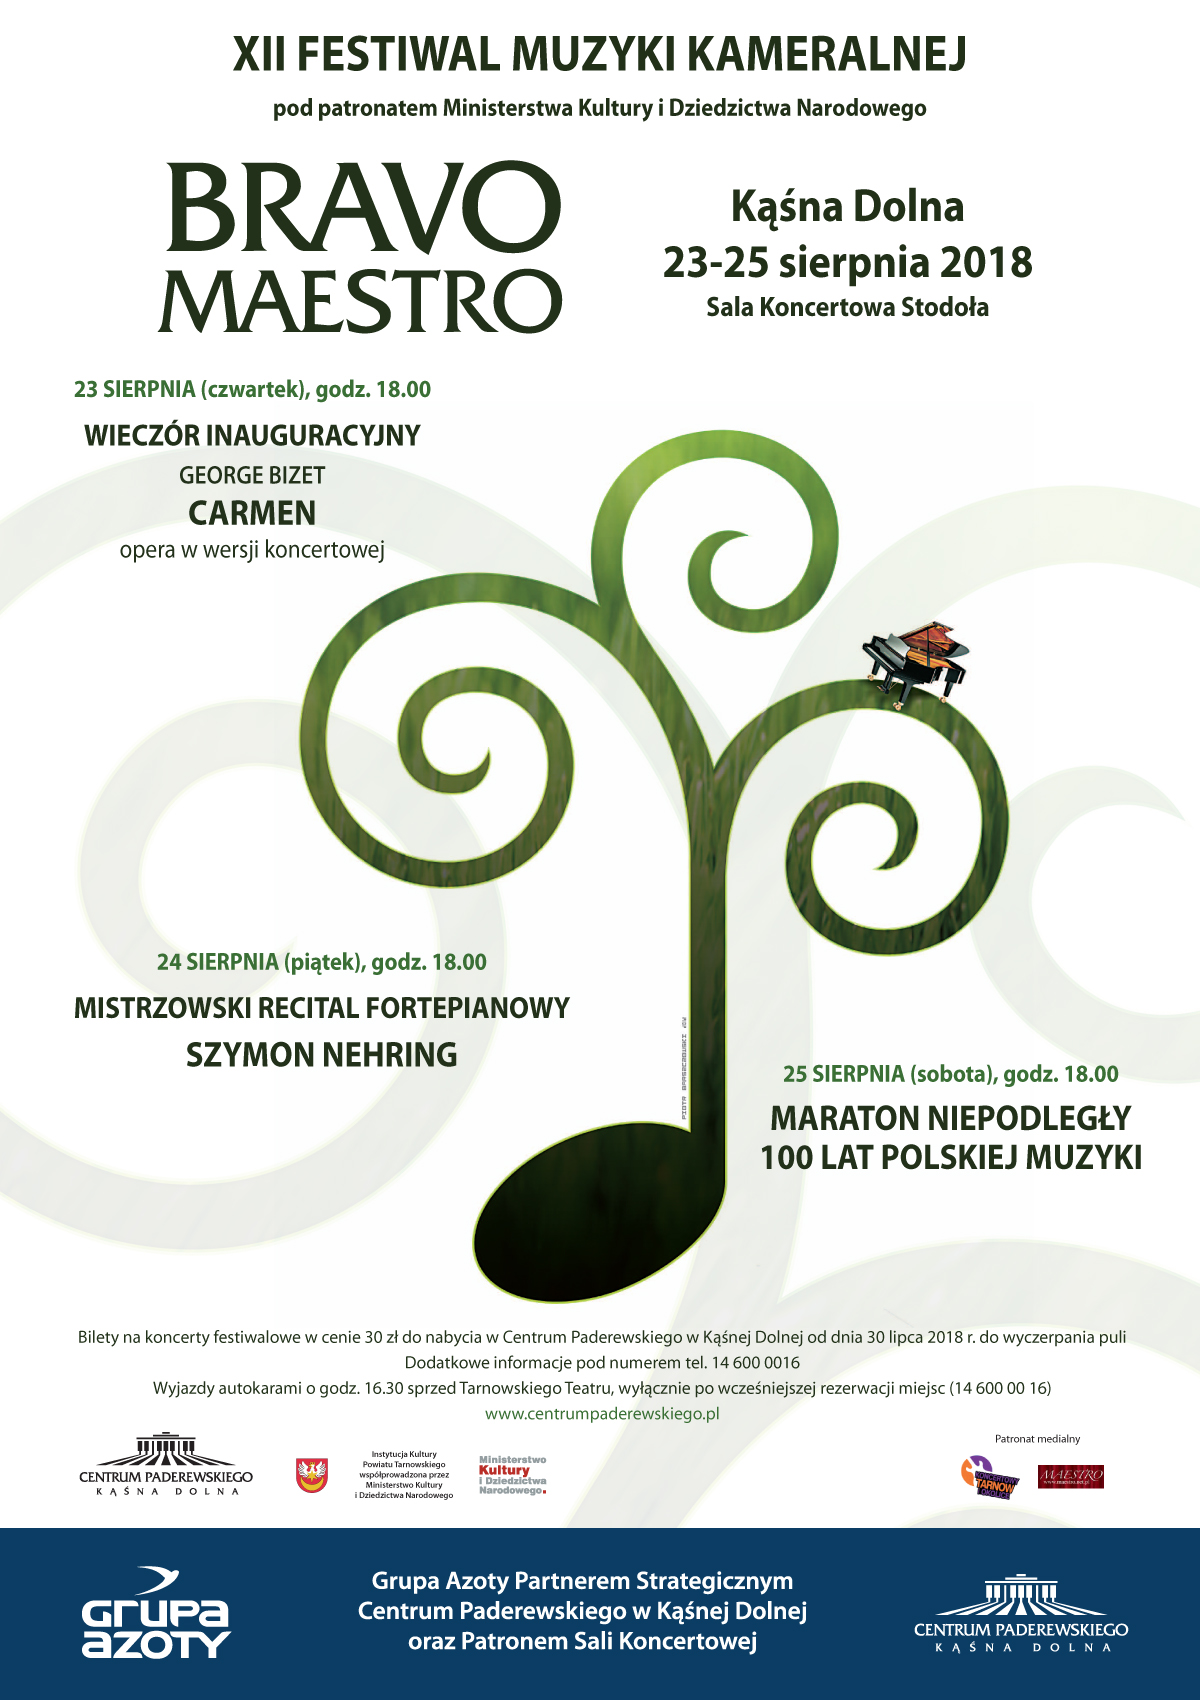 XII Festiwal Muzyki Kameralnej Bravo Maestro (źródło: materiały prasowe organizatora)